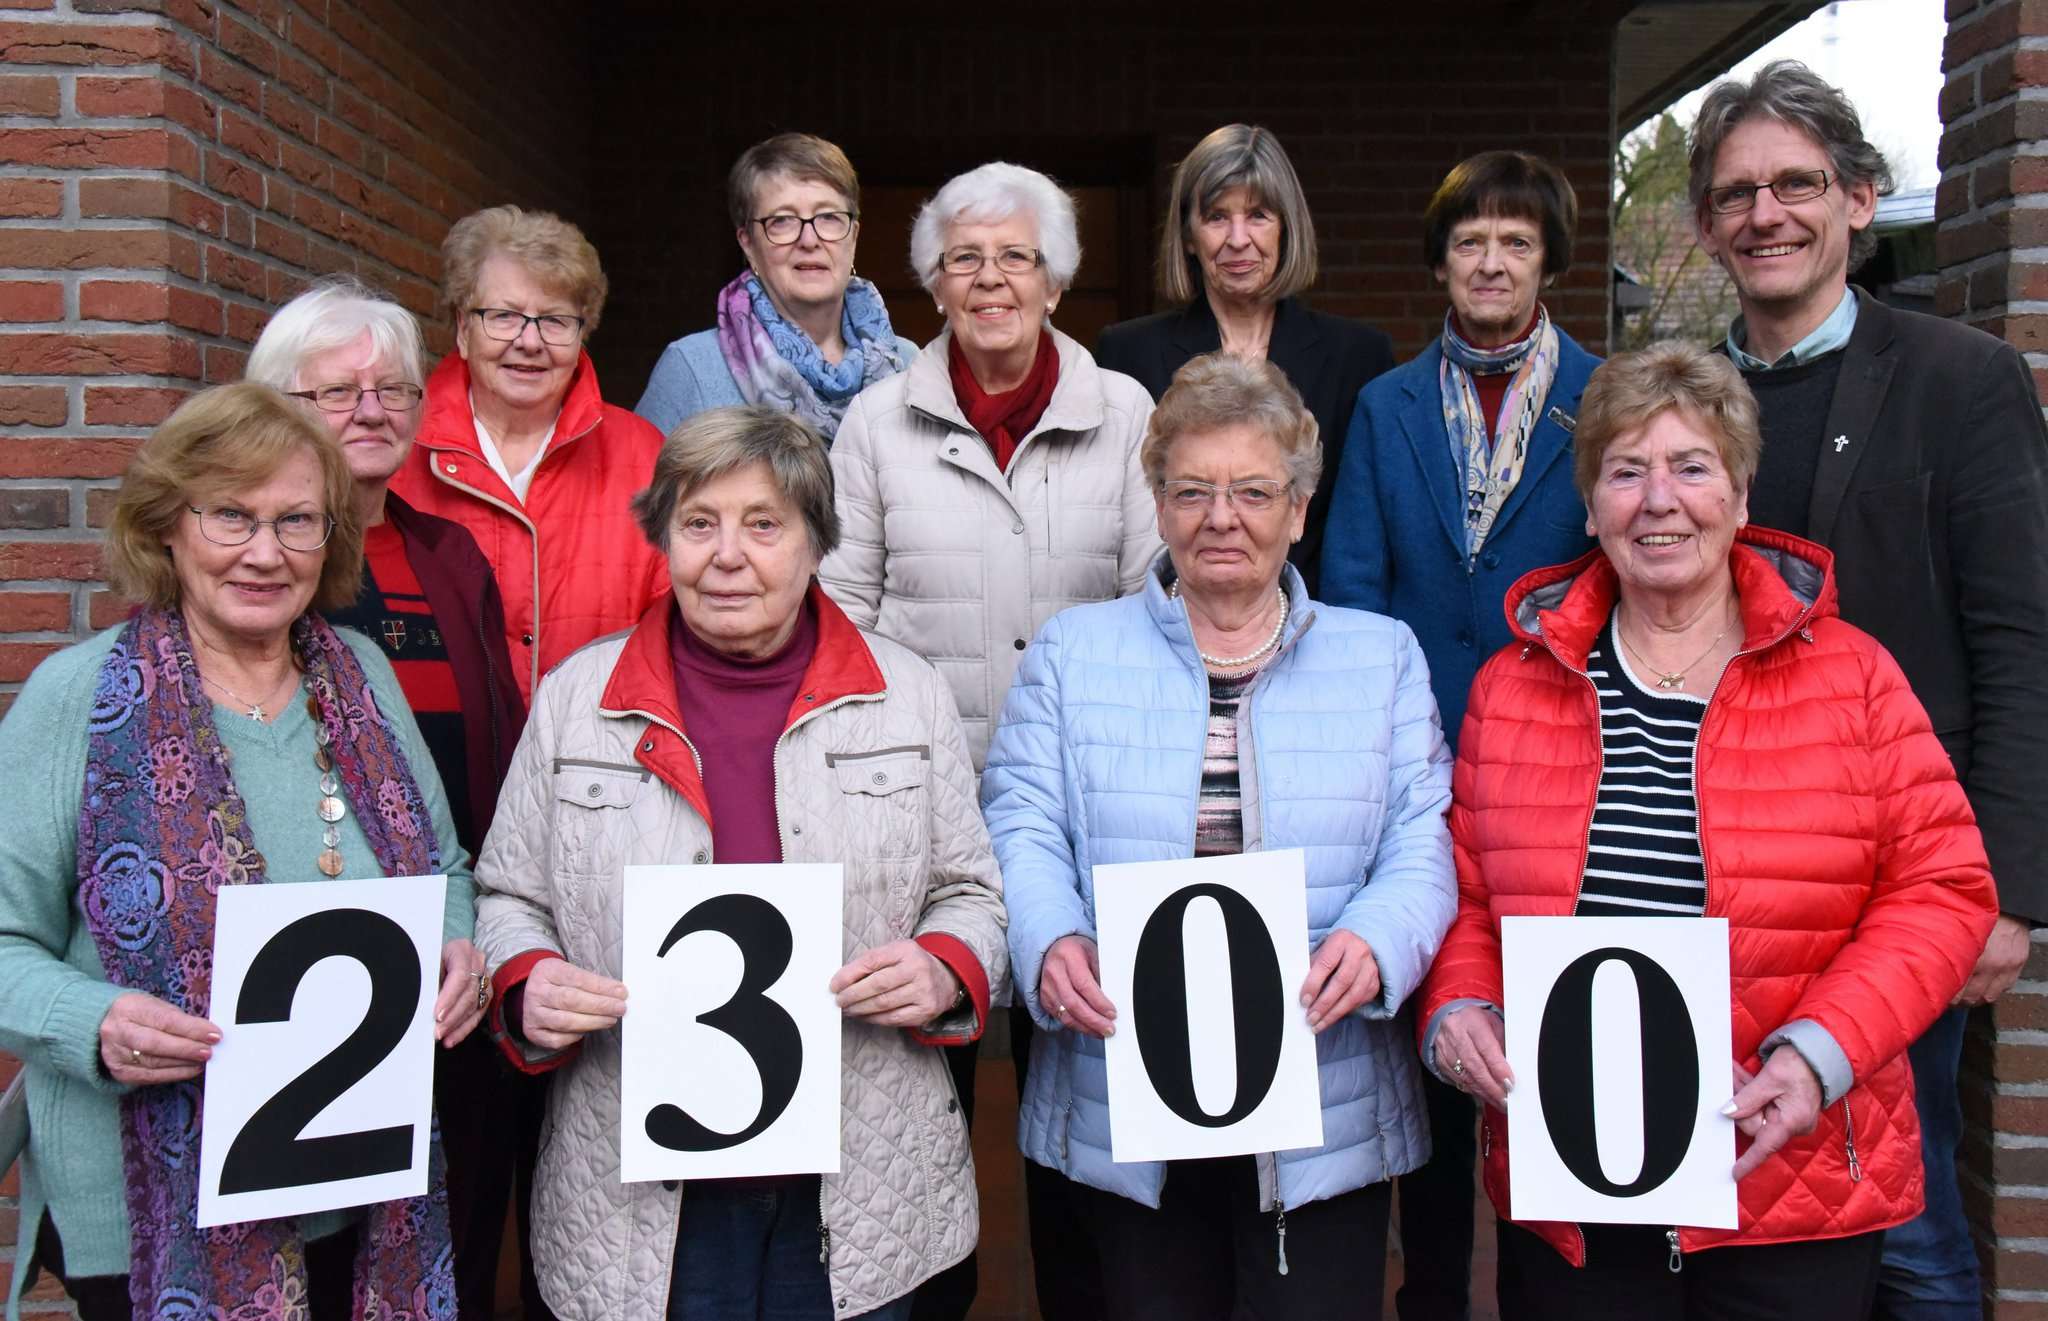 2.300 Euro spendet die Bastelgruppe der Kirchengemeinde Sottrum für die zweite Sottrumer Pfarrstelle und das Frauenhaus des Landkreises Rotenburg.